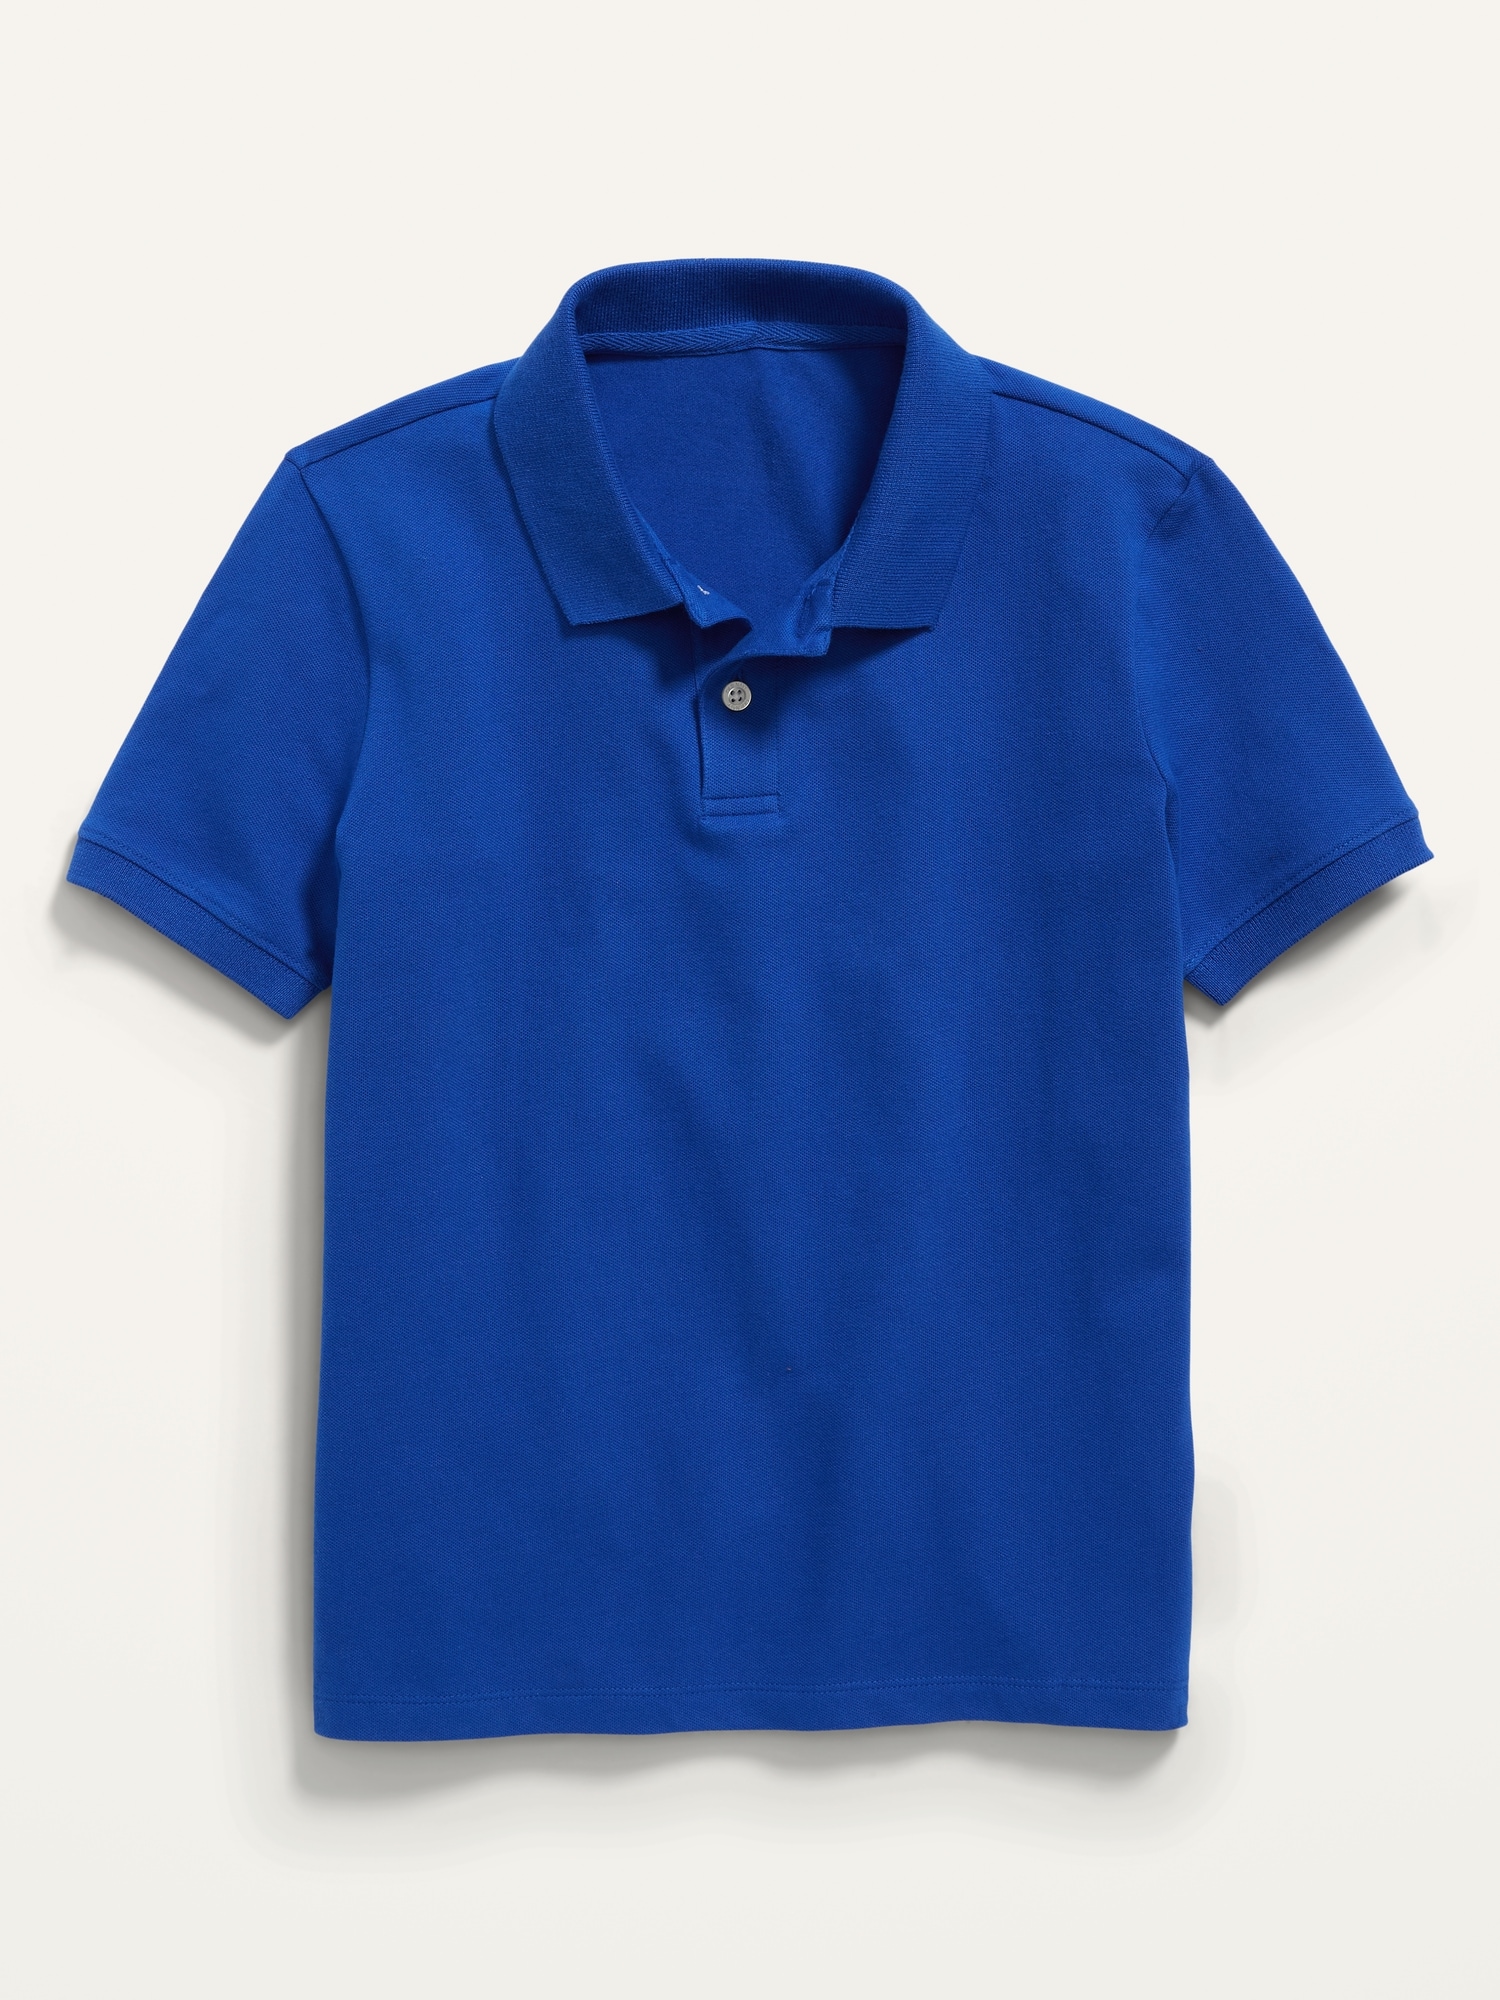 Old Navy School Uniform Pique Polo Shirt for Boys blue. 1